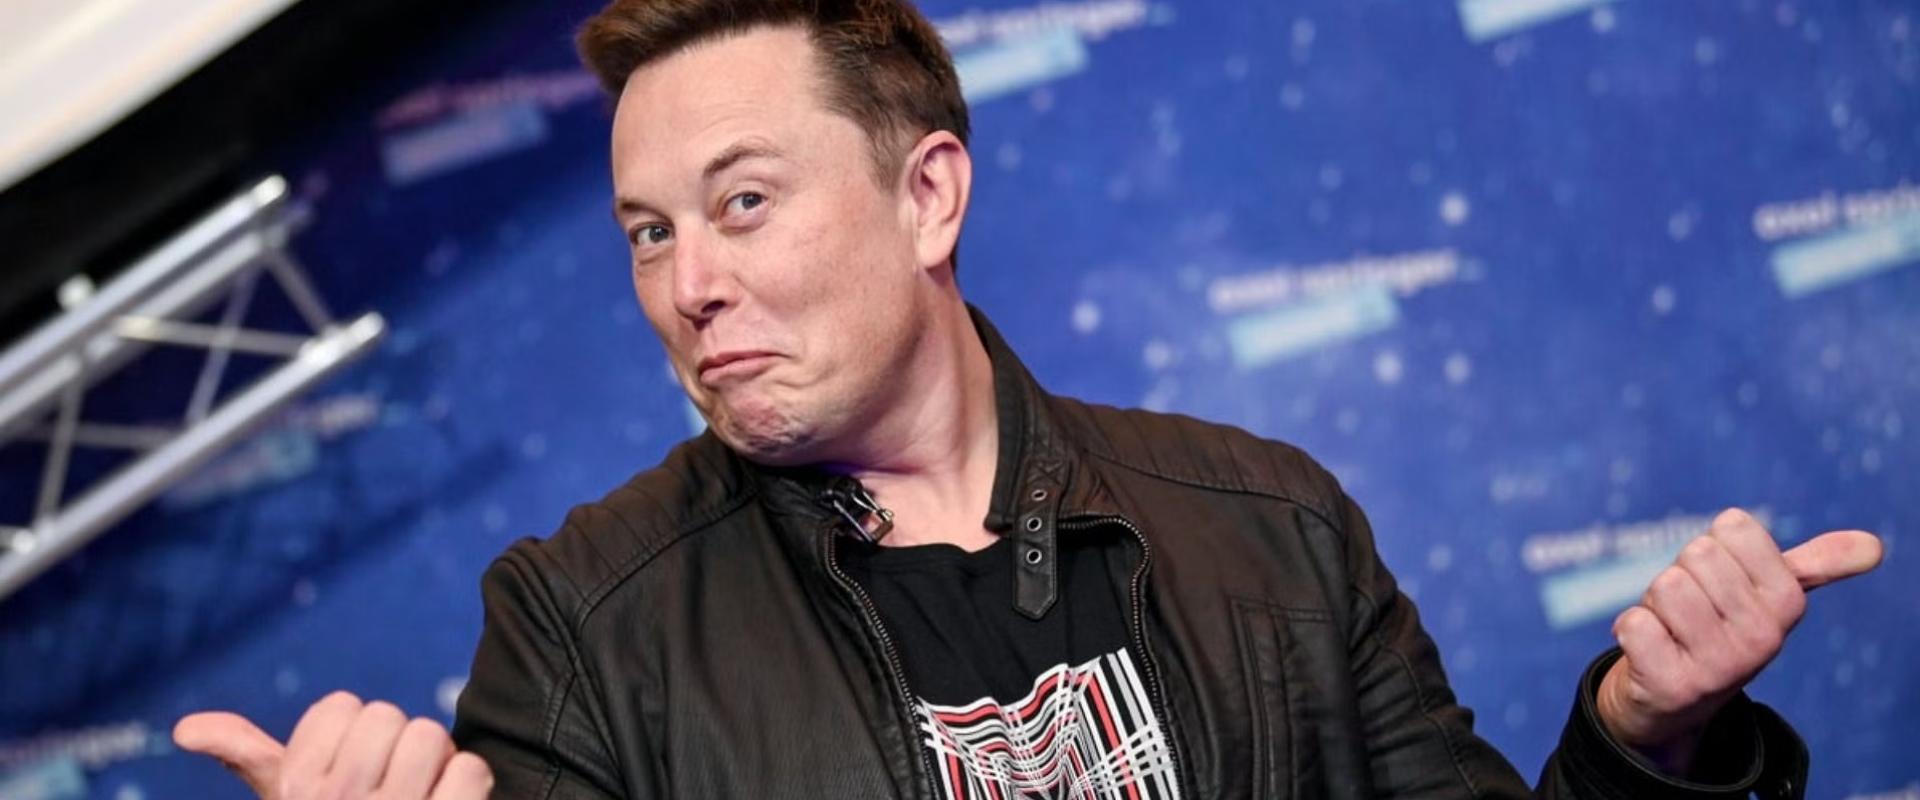 Elon Musk is leteszi a névjegyét a Fortnite-ban